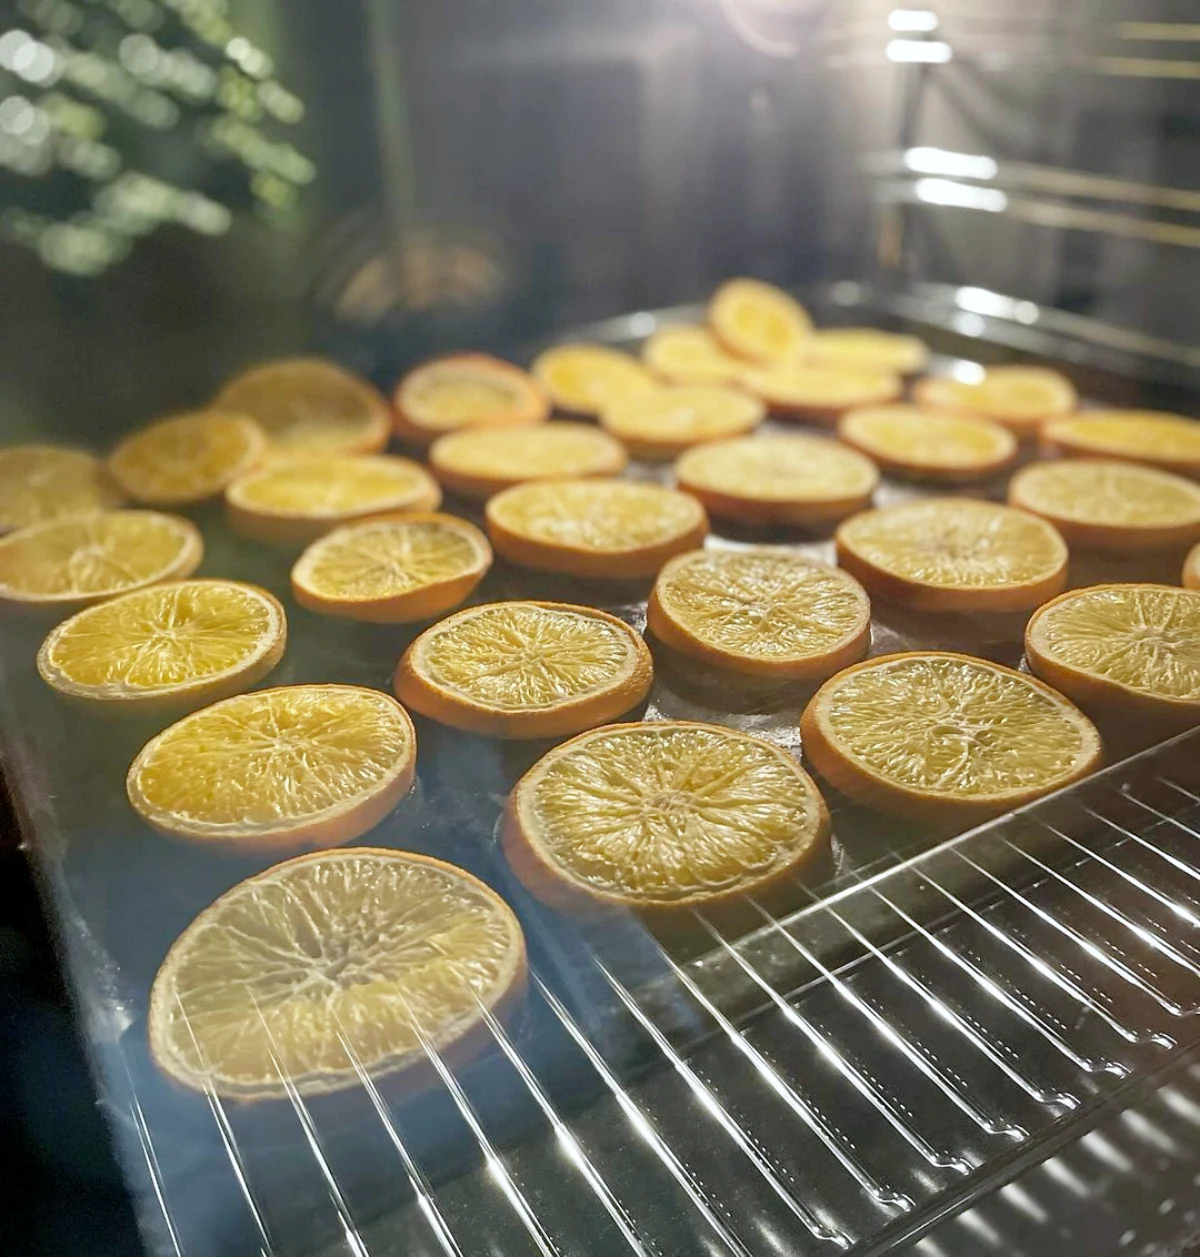 comment secher des oranges au micro onde